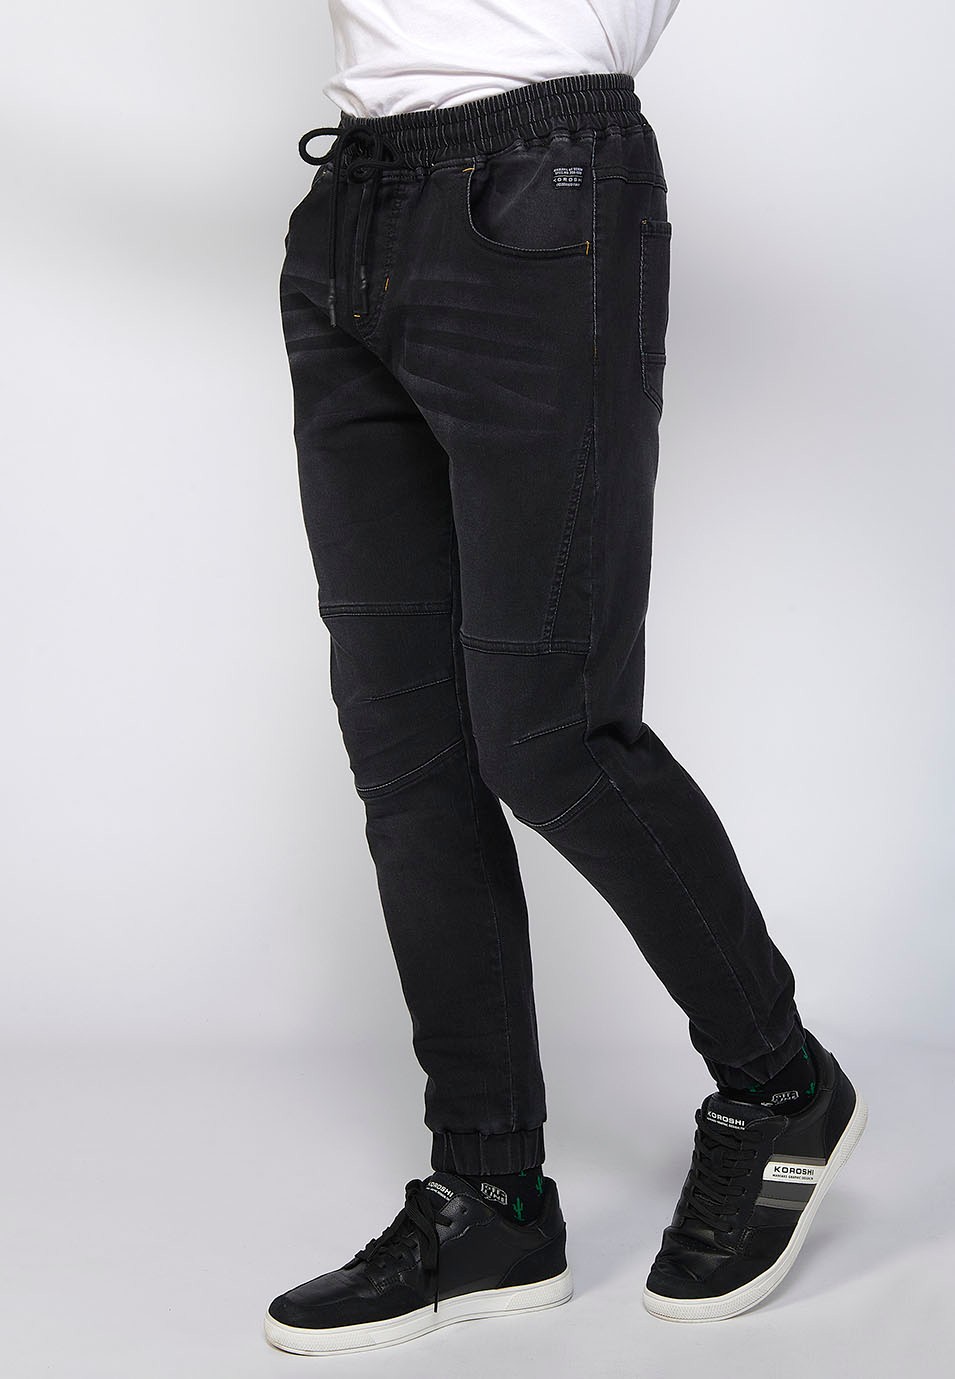 Pantalon de jogging long slim ajusté aux chevilles avec taille élastique réglable et cordon de serrage en Noir pour Homme 2